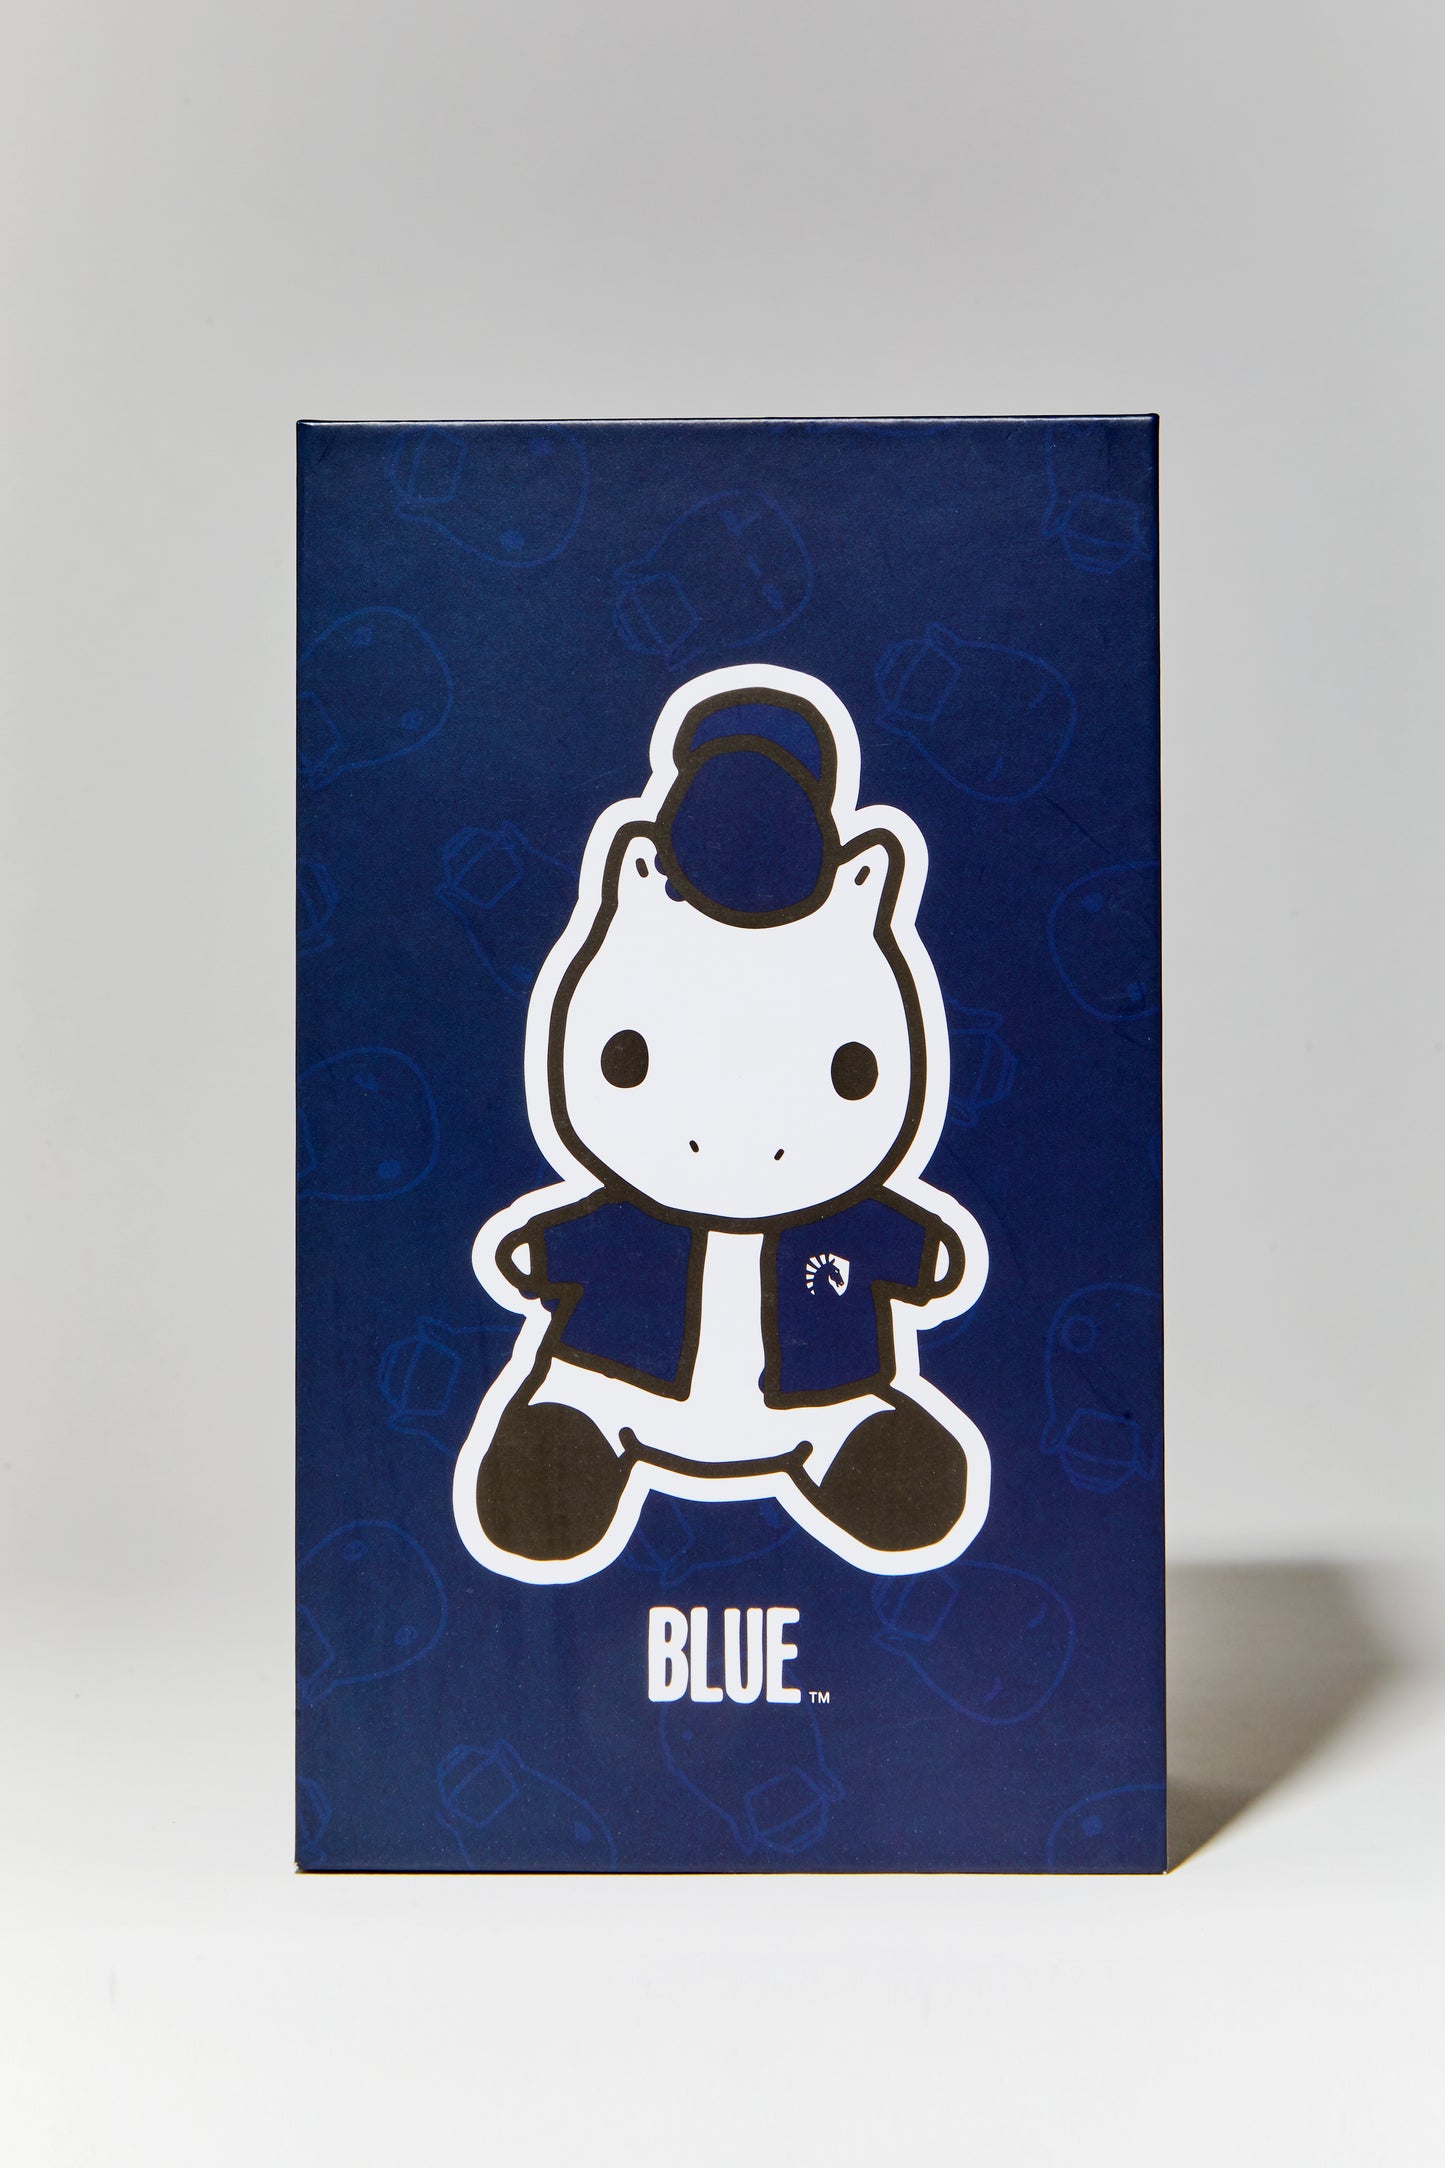 BOXED BLUE PLUSH 2.0